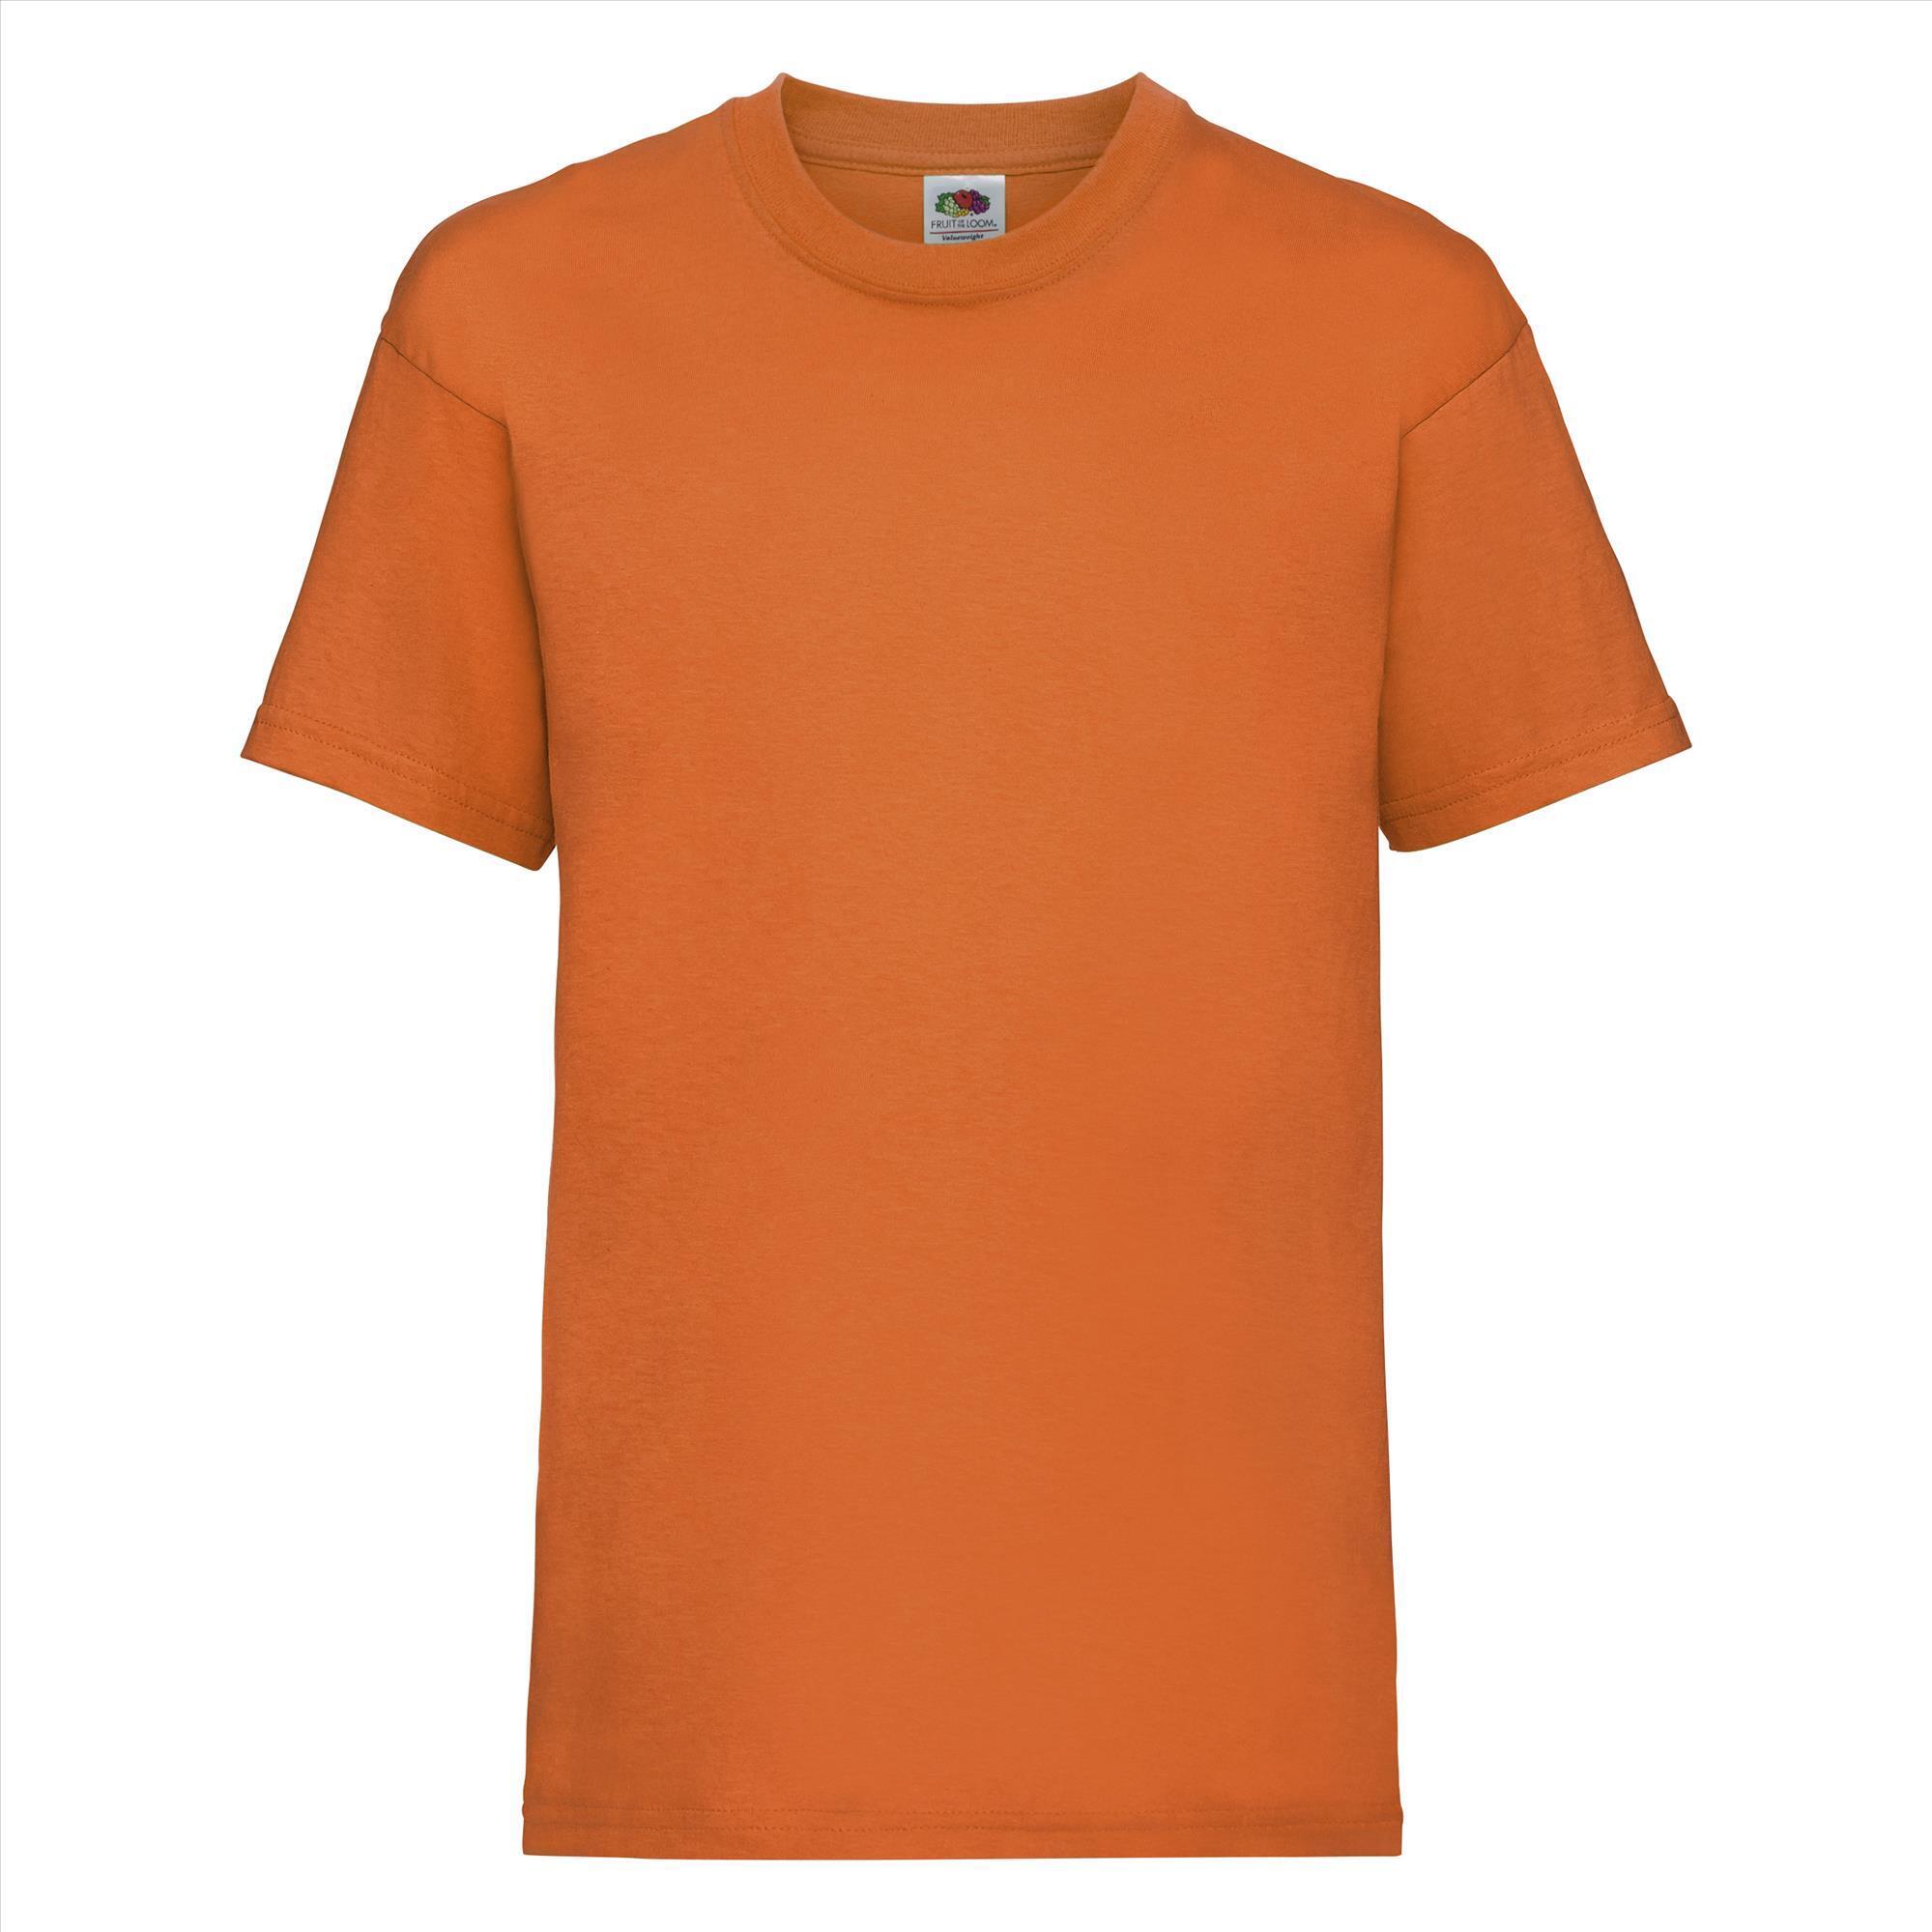 Gepersonaliseerde Kinder T-shirt oranje Kinderkleding bedrukken